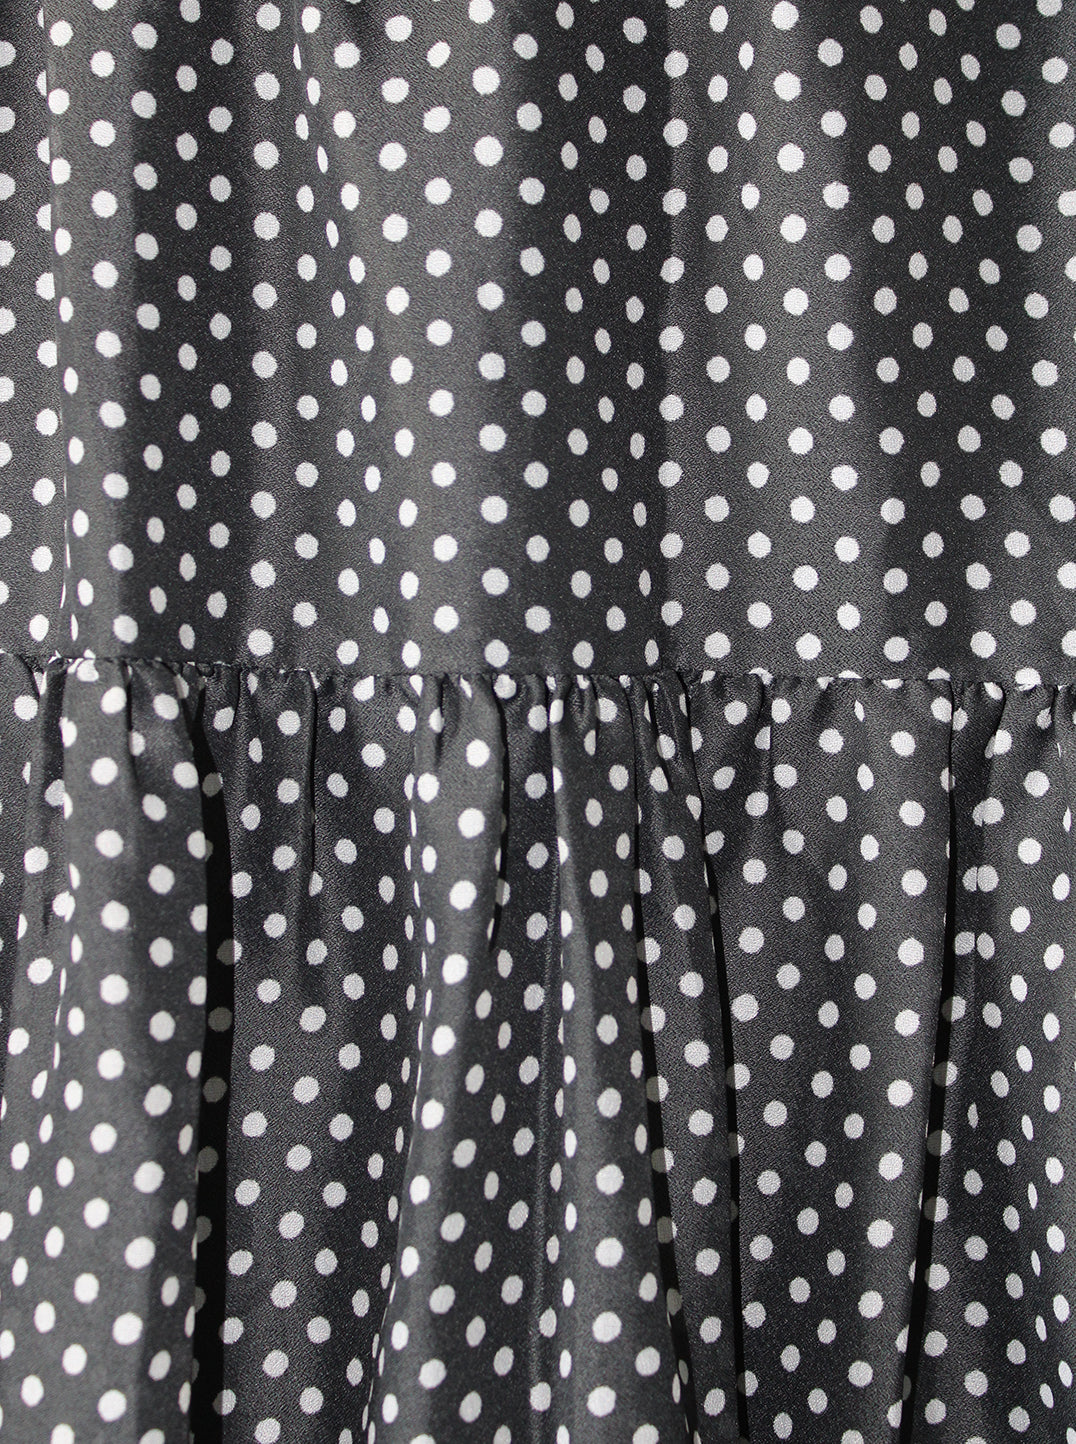 Black & White Polka Dot Skirt